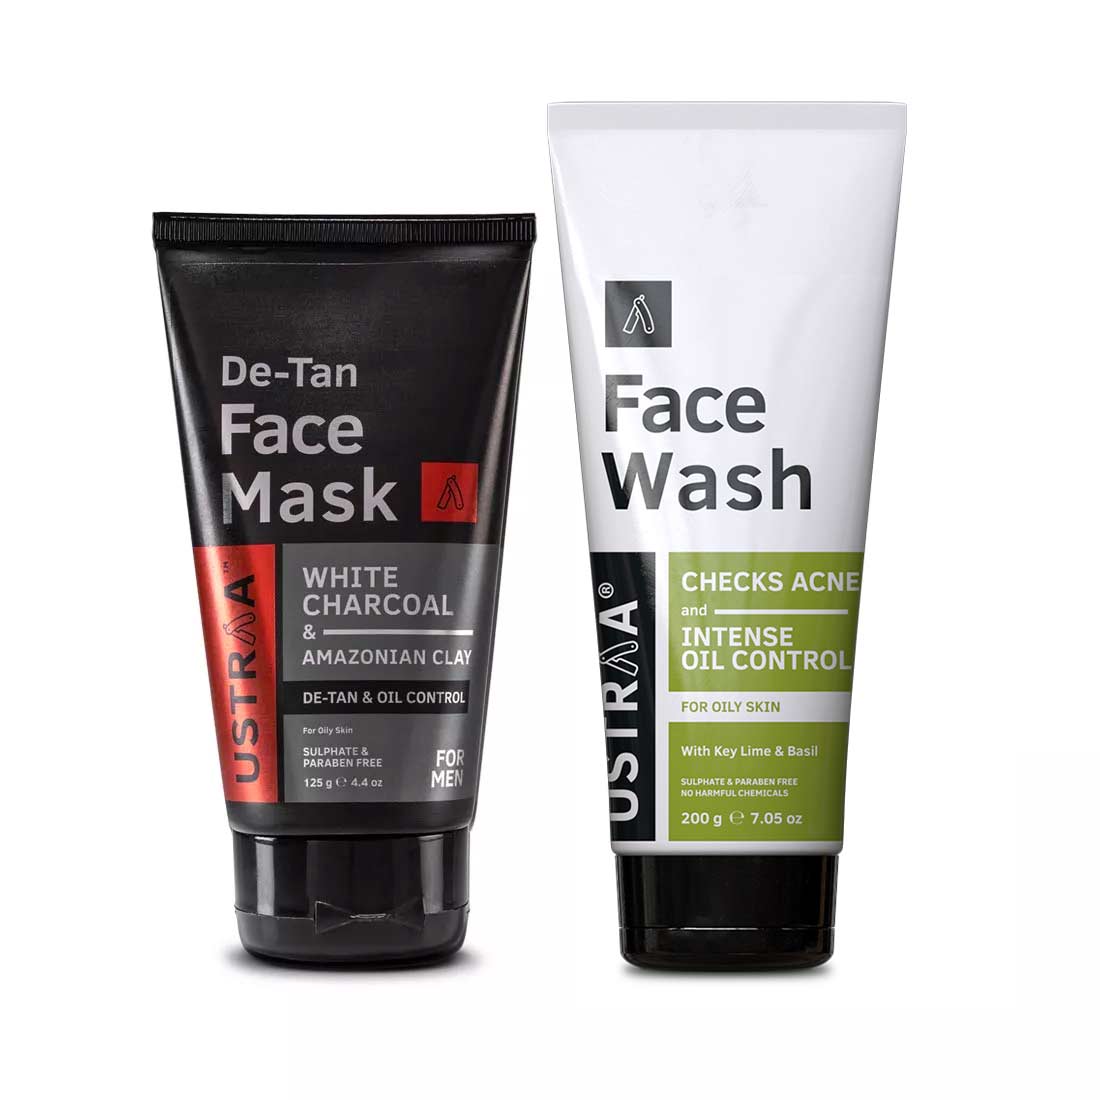 De-Tan Face Mask - Oily Skin & Face Wash - Oily Skin